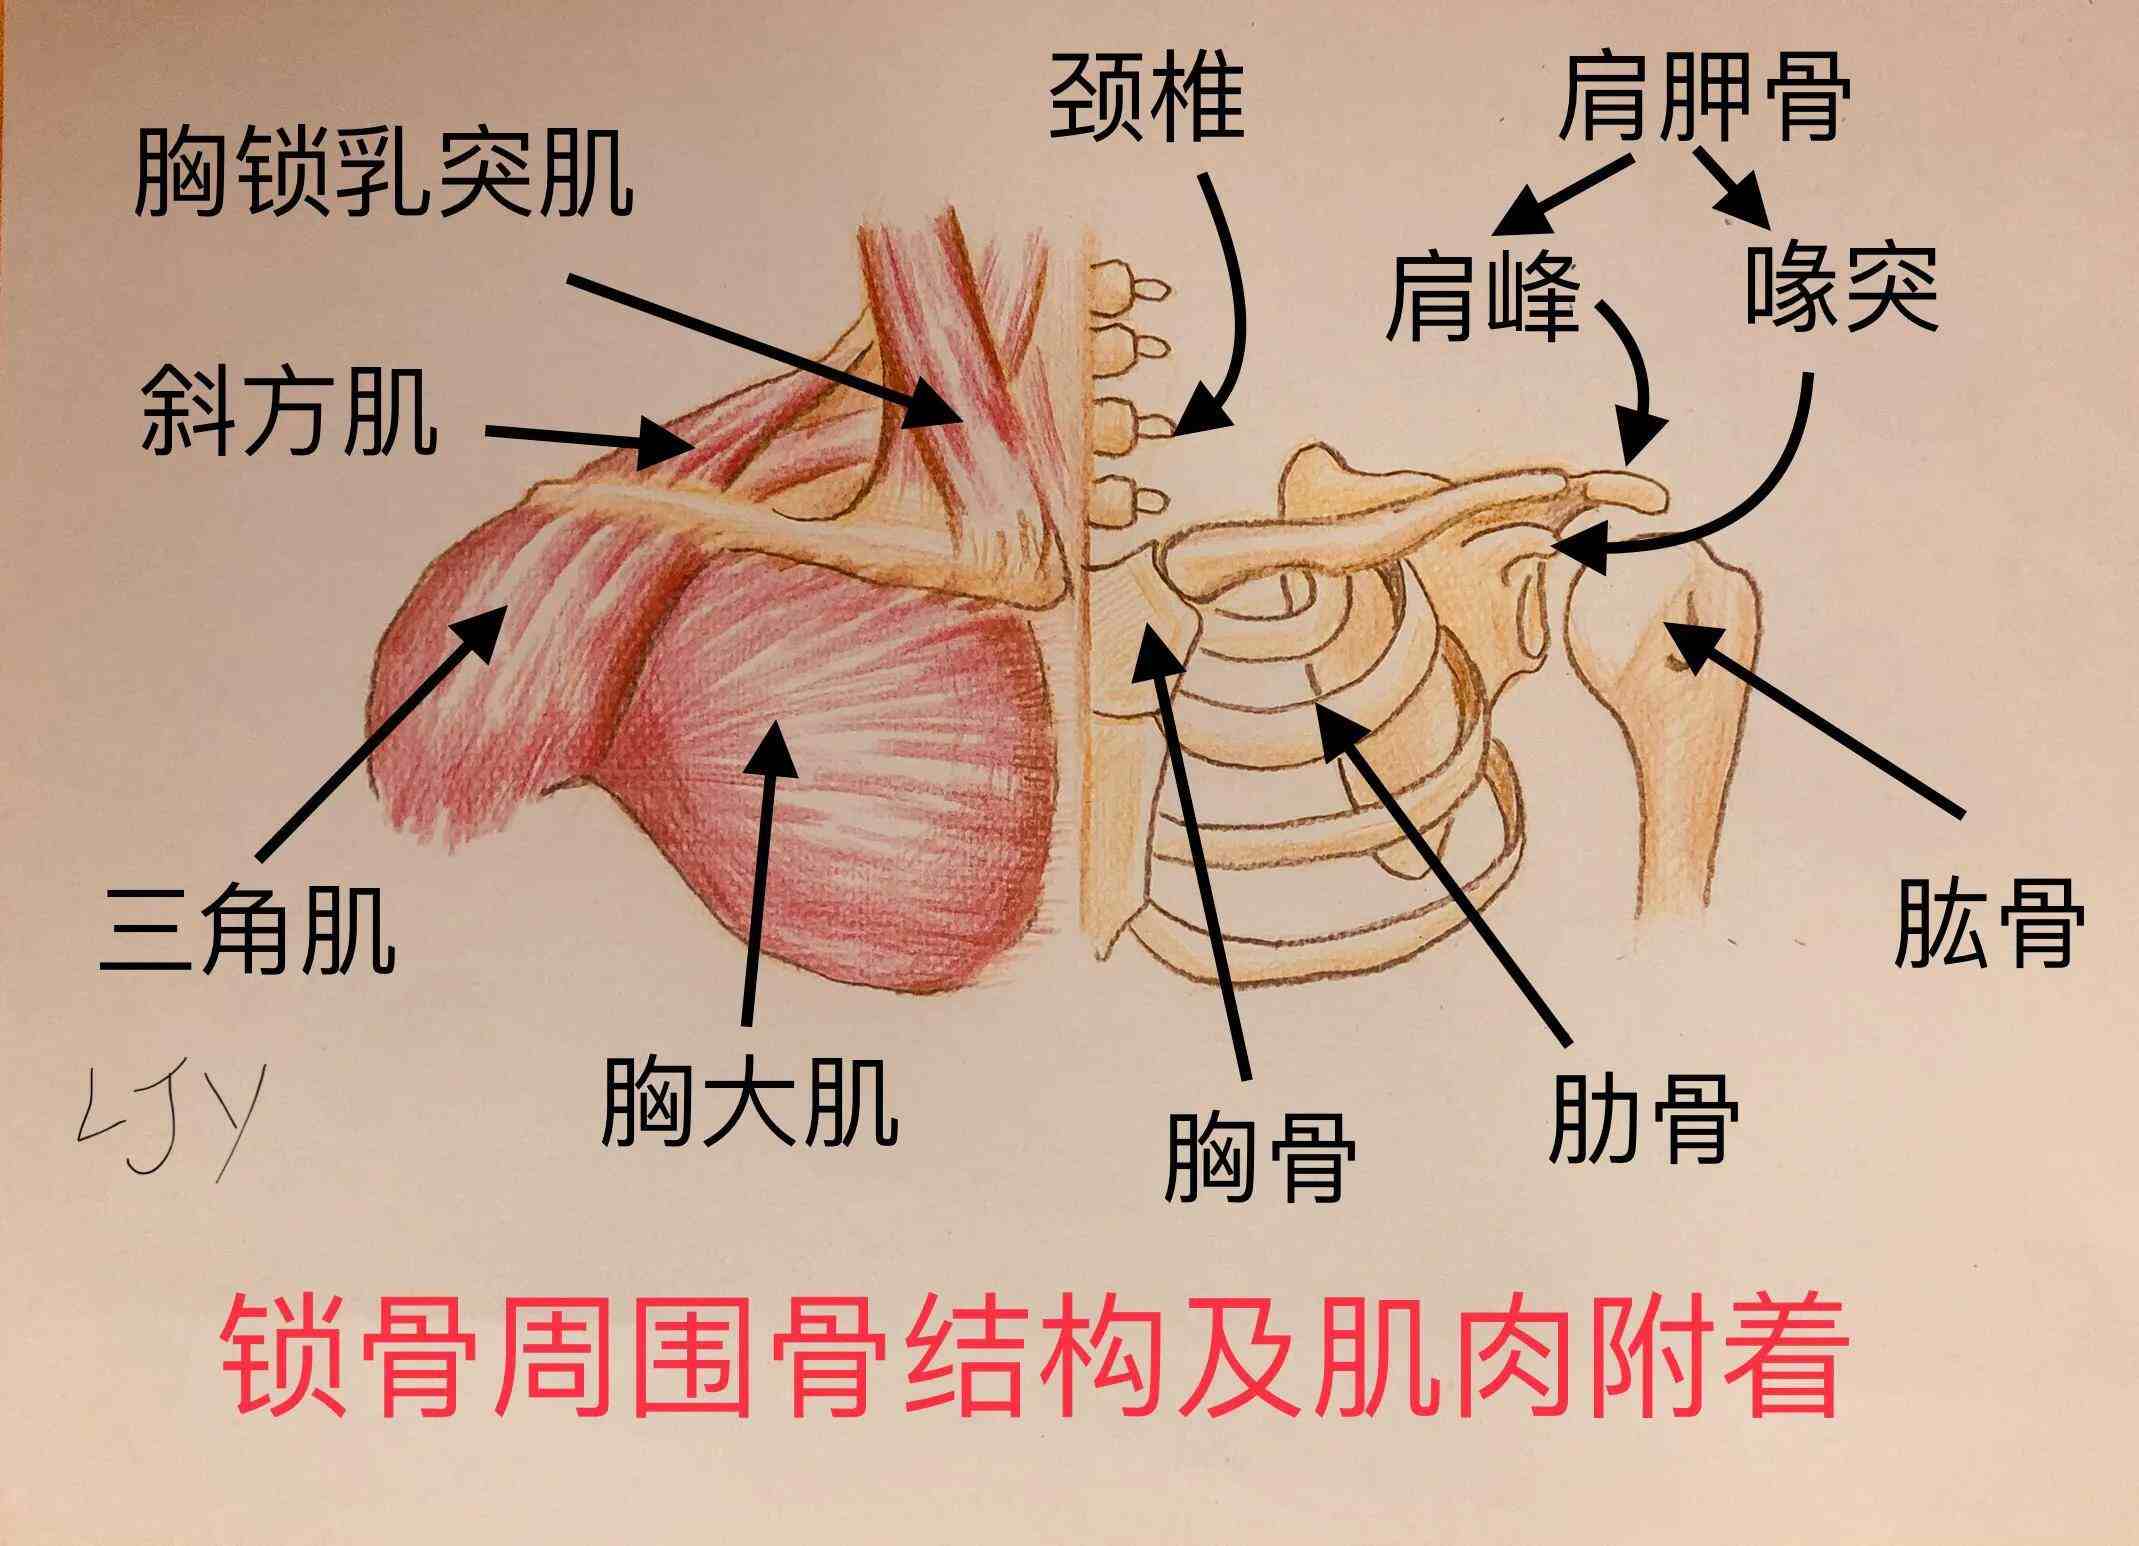 从侧面观察可以发现锁骨外侧即肩峰端的位置高于内侧即胸骨端,其落差